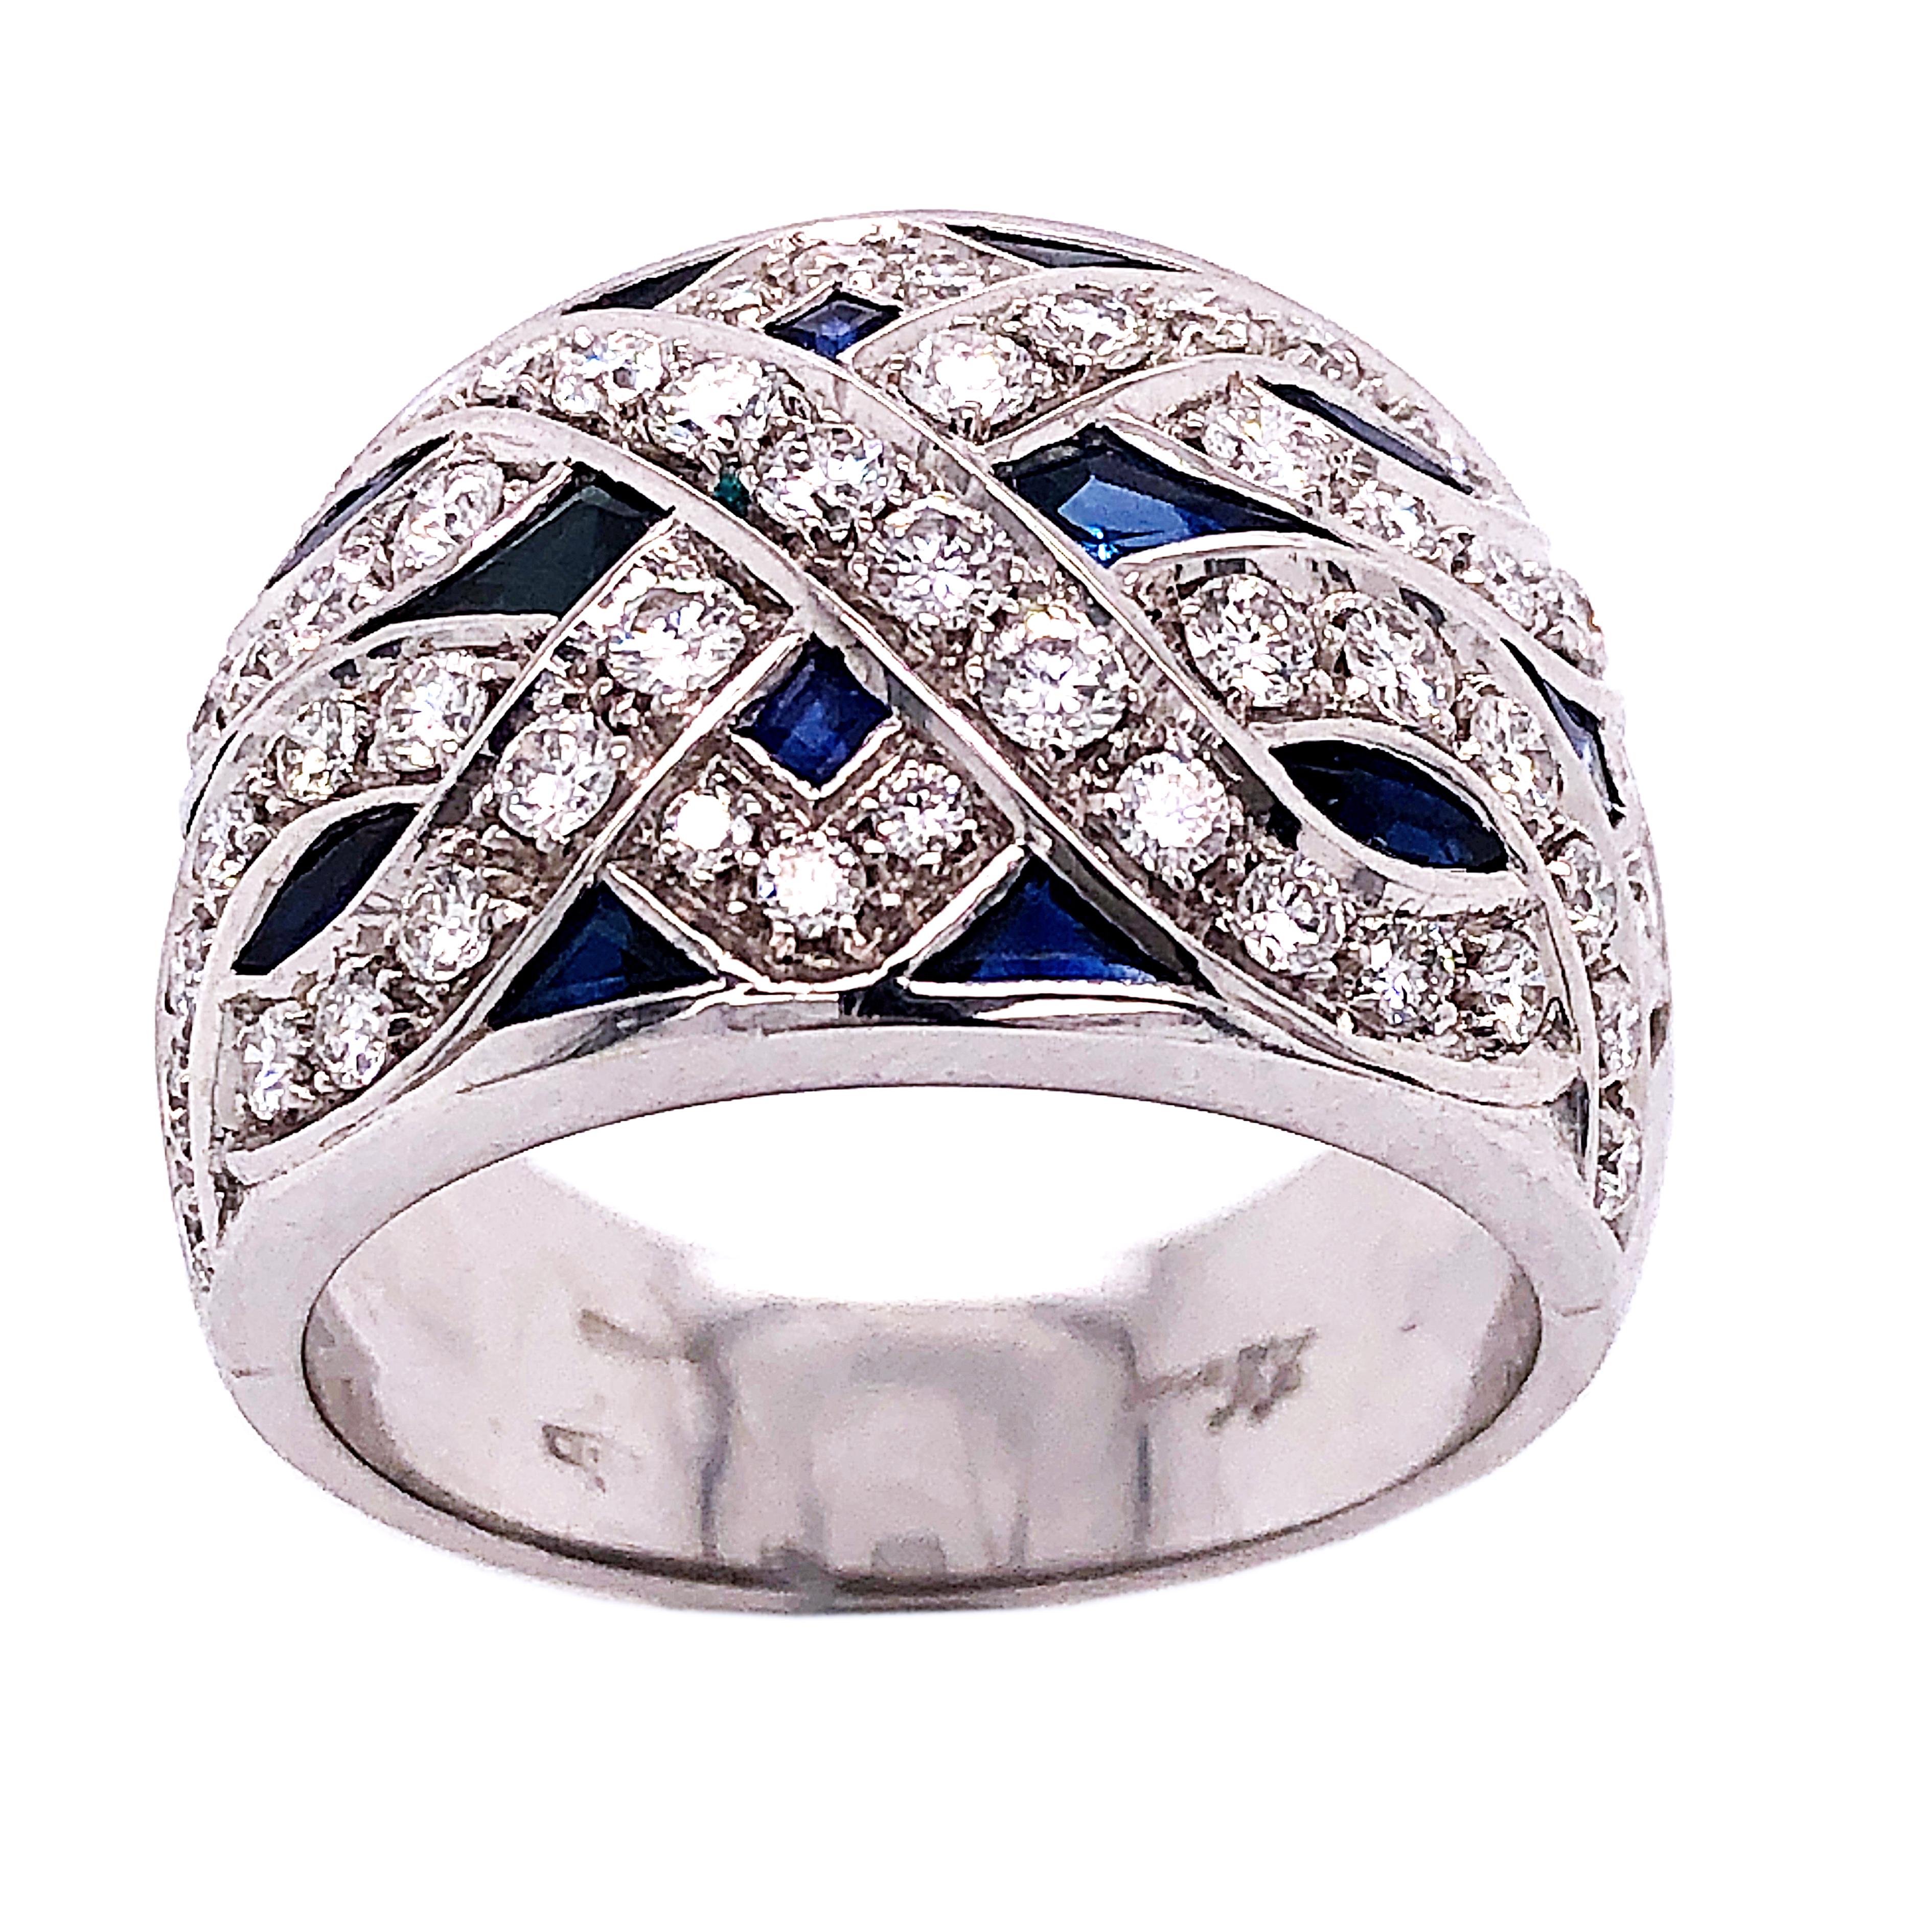 Original 1965 Chic noch zeitlos One-of-a-kind prächtigen Cocktail-Ring mit 3,90Kt natürlichen Hand eingelegt blauen Saphir, 1,23 Karat weißen Diamanten (D-E, VvS1) in einem 18Kt Weißgold Einstellung.

Us Größe 6 1/2
Französisch Größe 53.5
Wir freuen